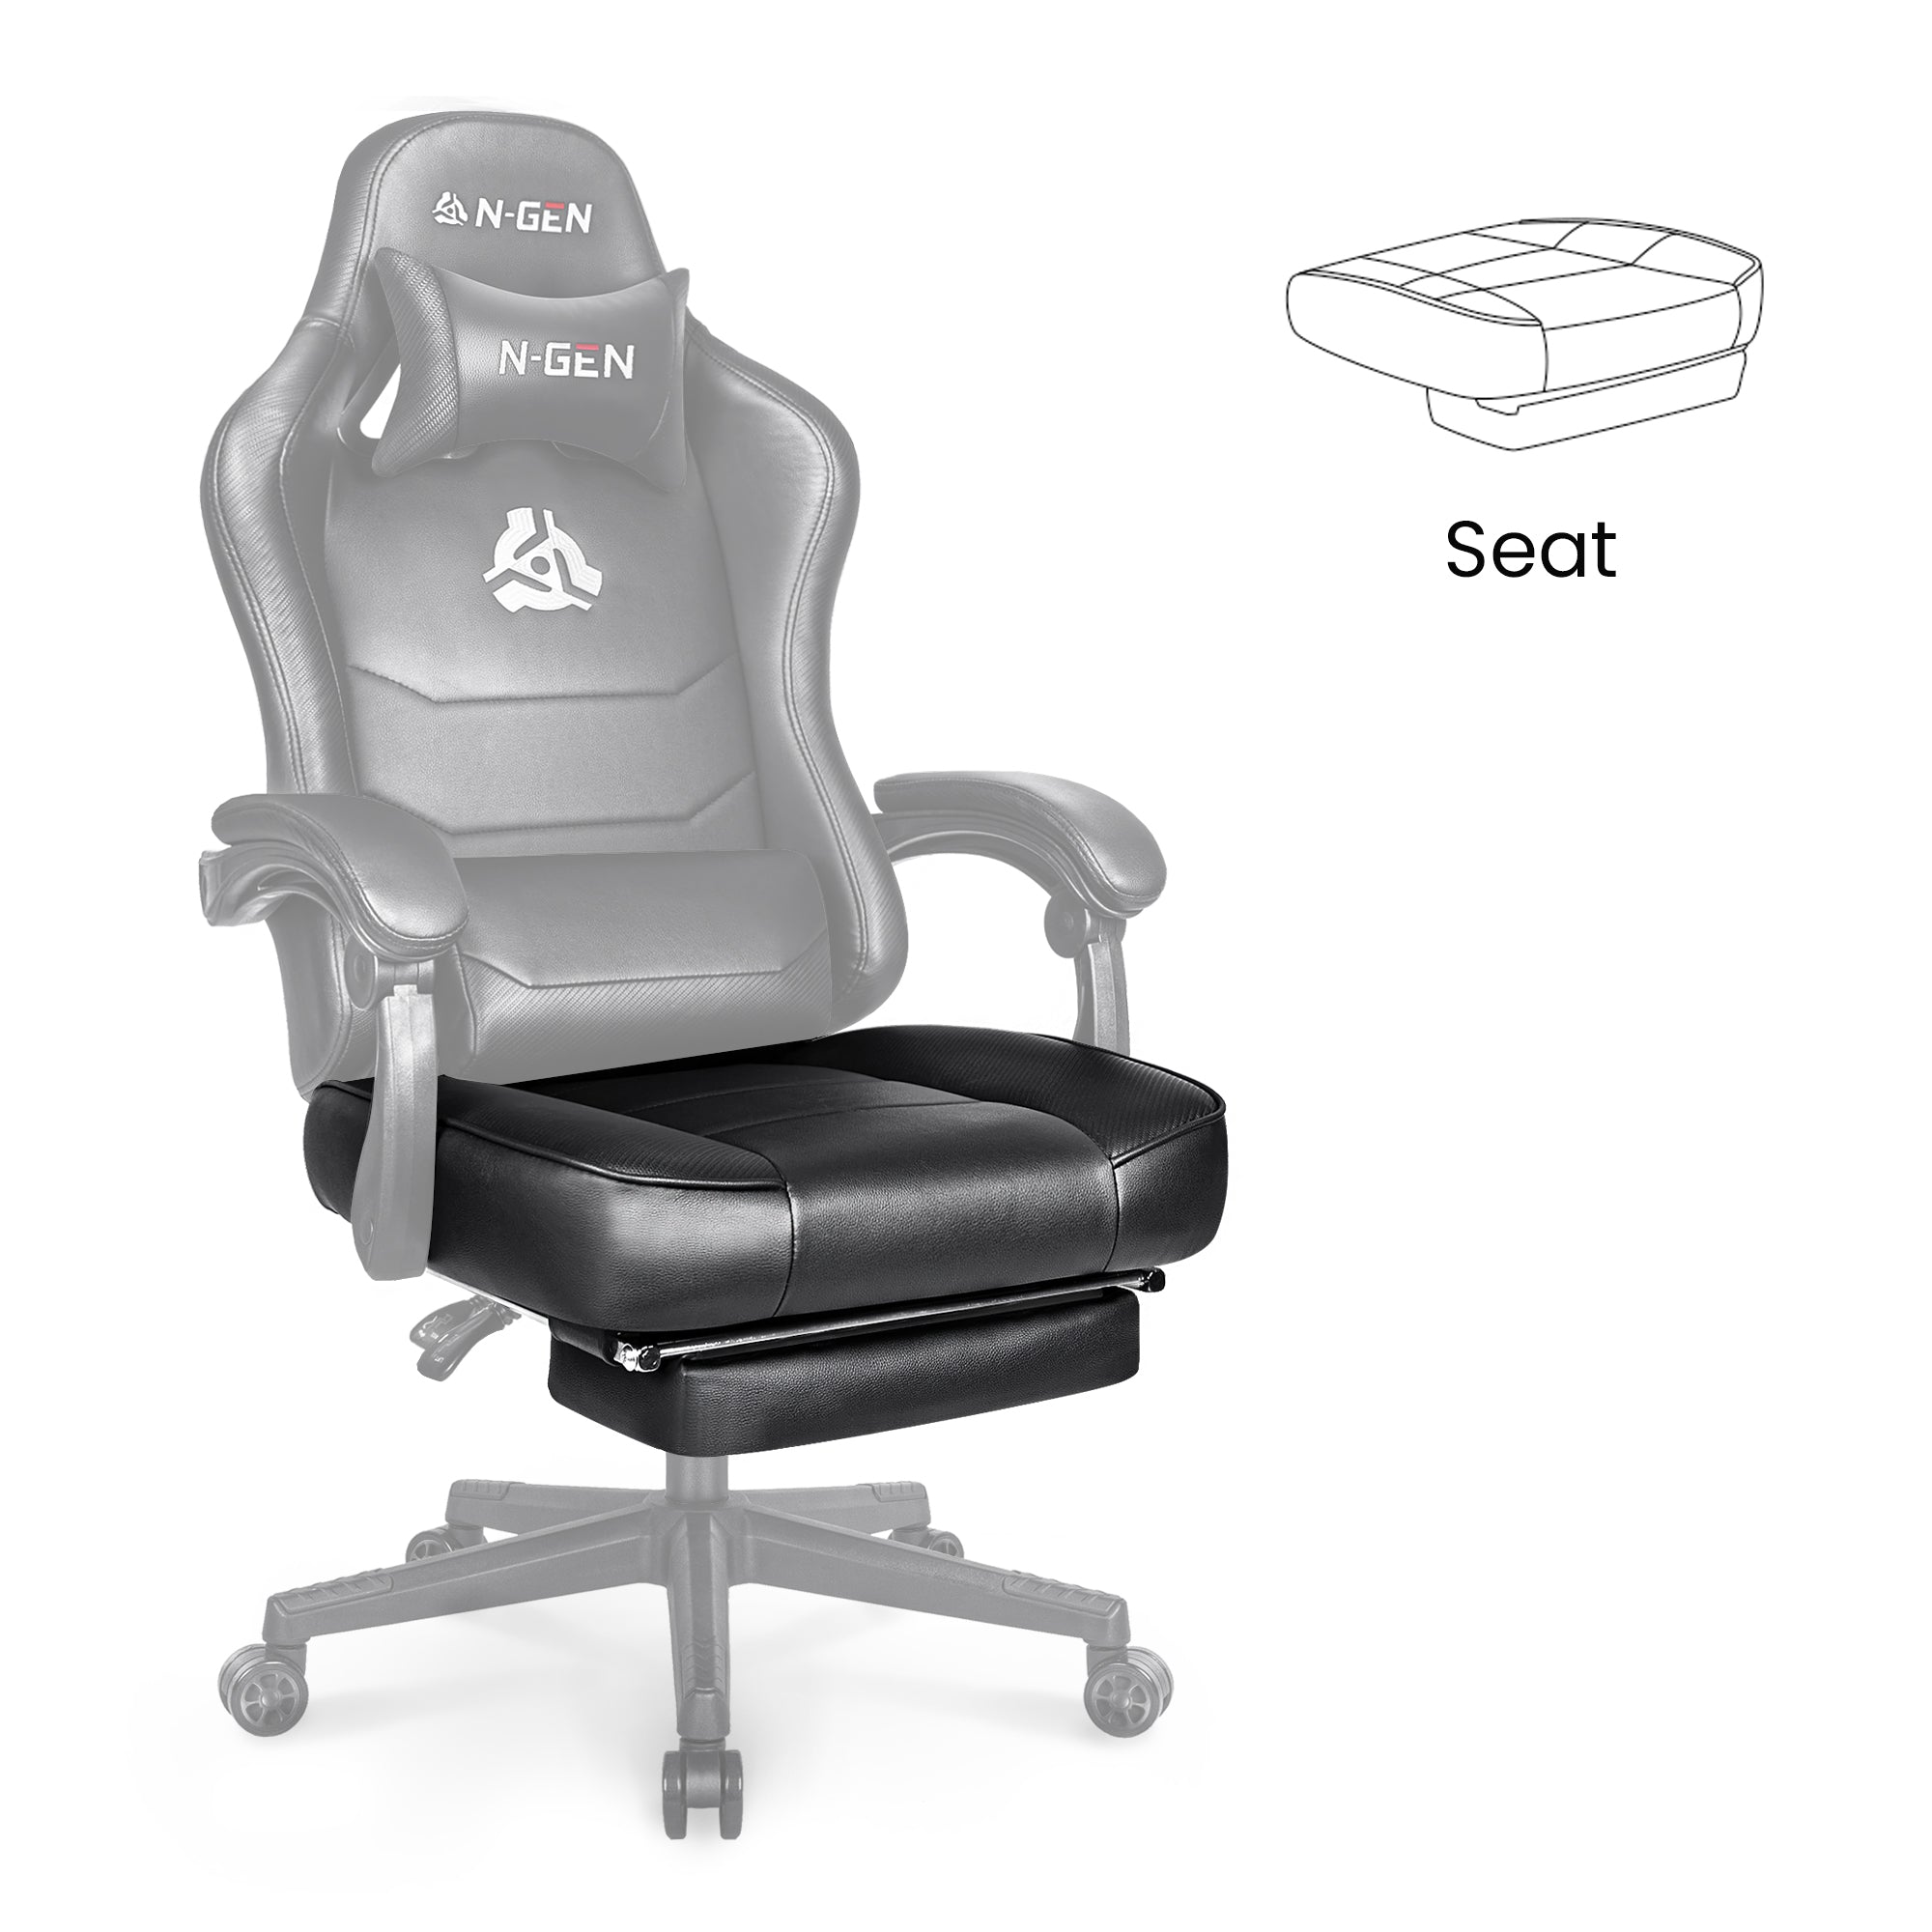 [part] Citus Seat